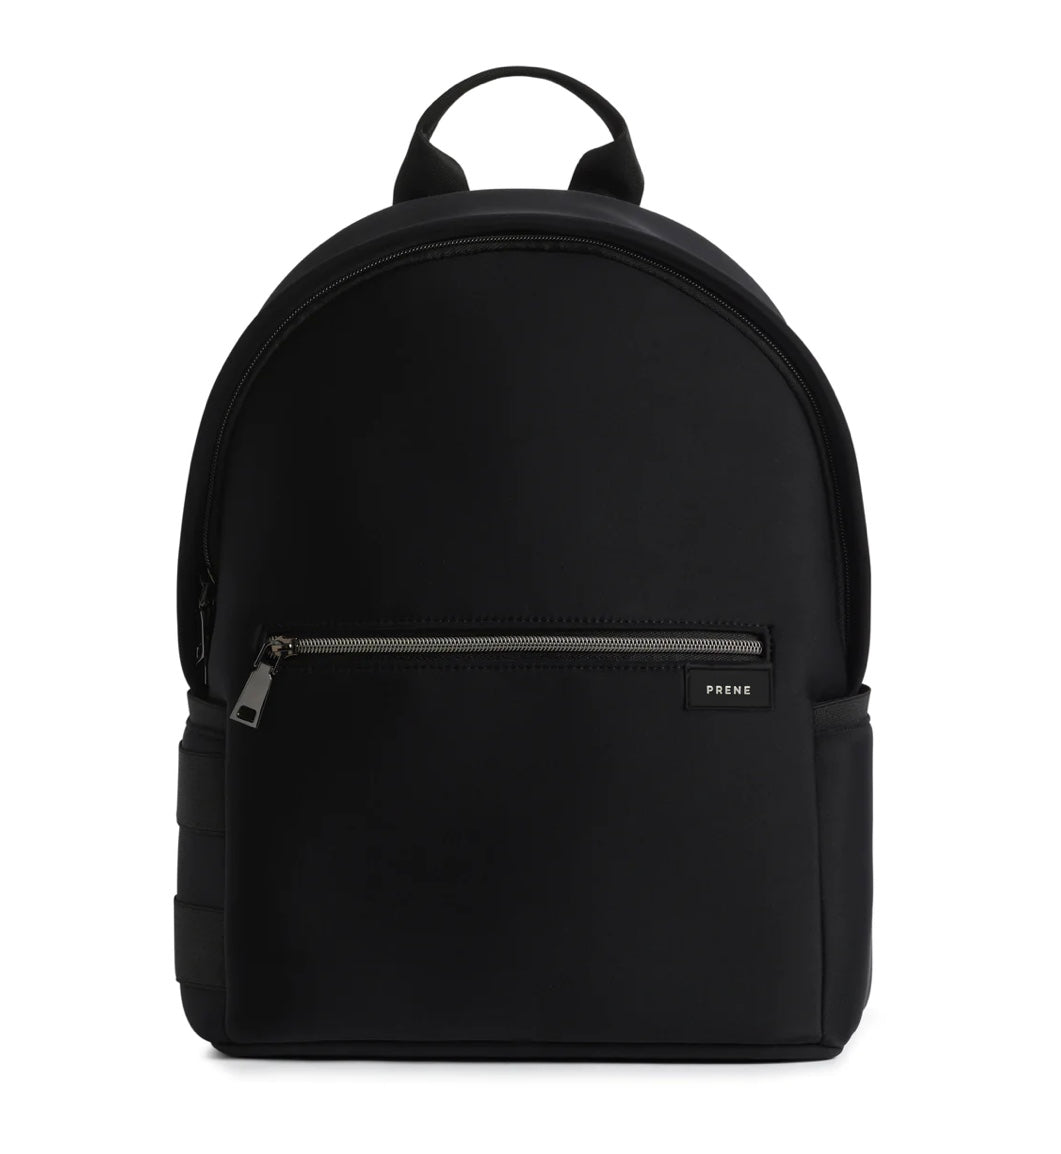 The Parker Backpack (BLACK) Neoprene Bag